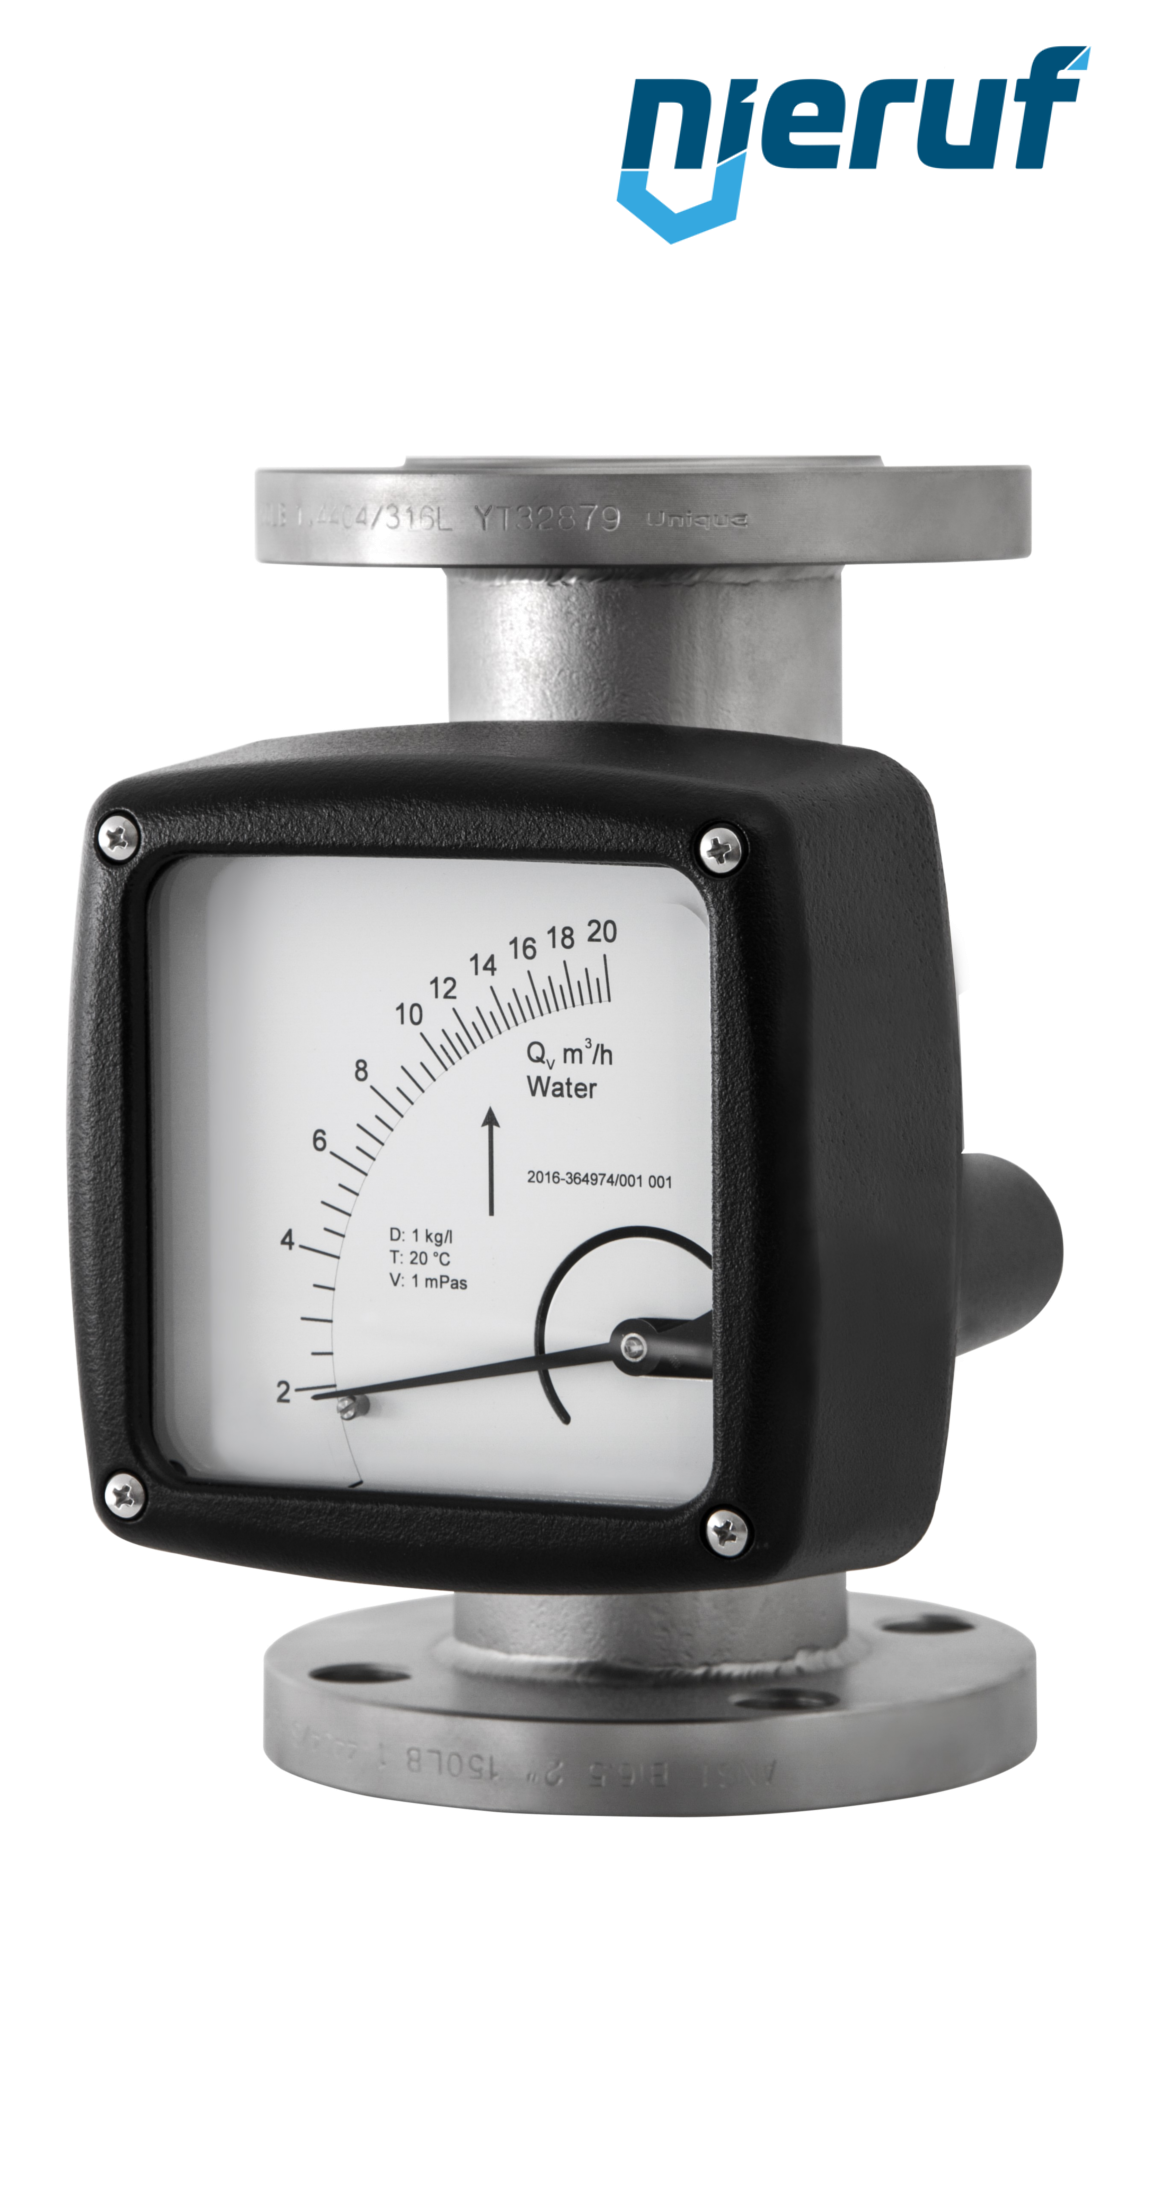 misuratore di flusso / rotametro completamente in metallo DN50-attacco 400,0 - 4000,0 l/h tubo DN50 acqua